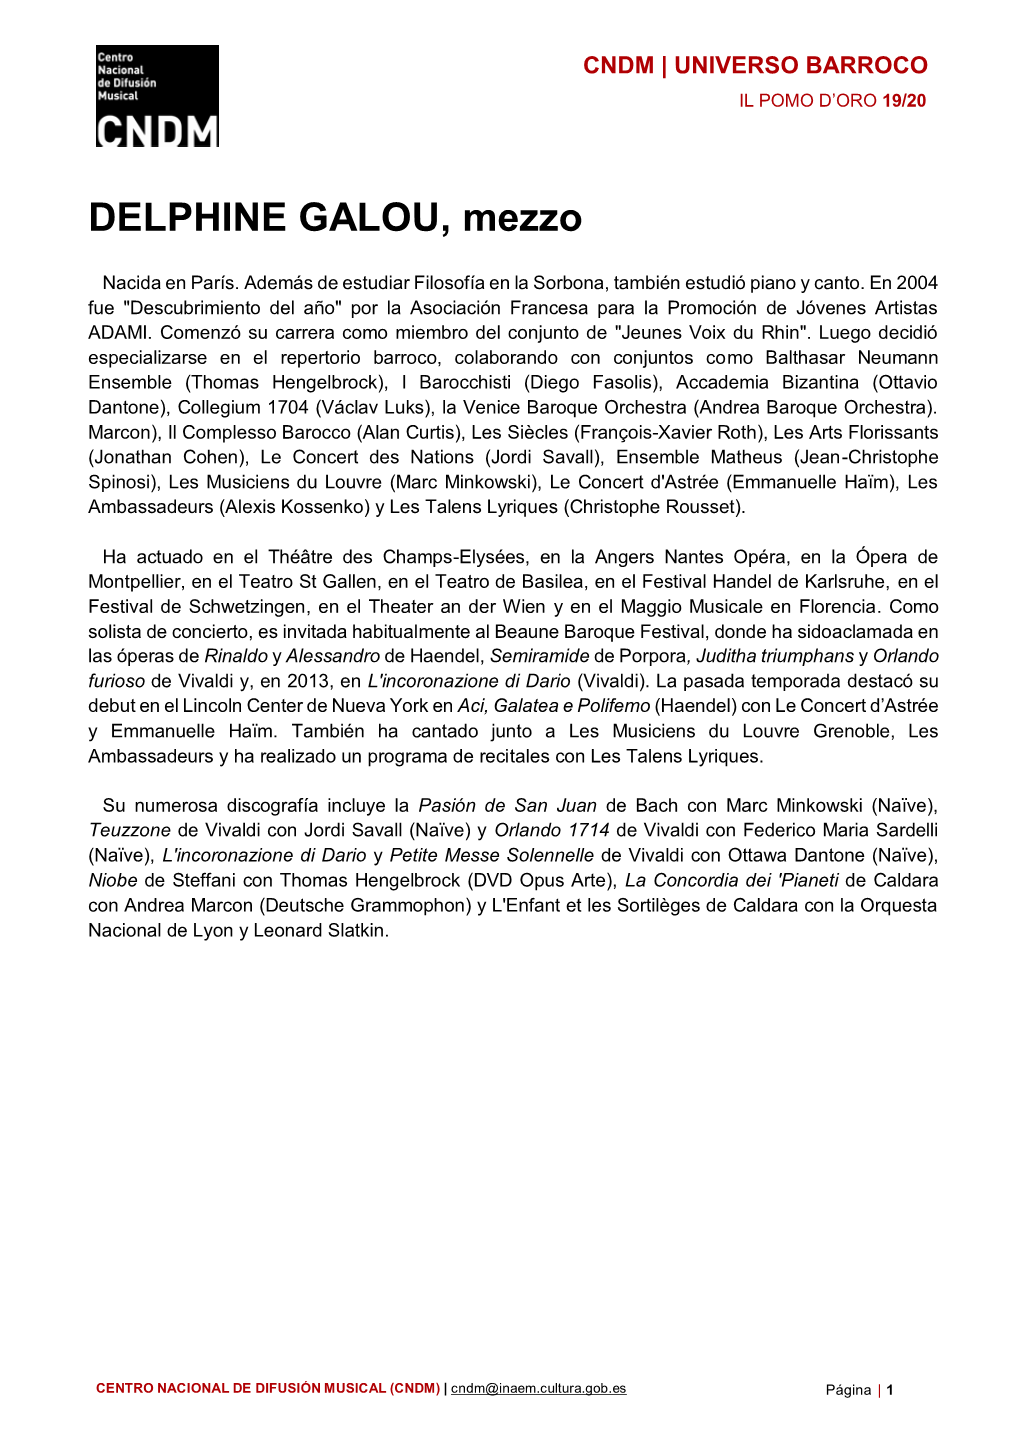 DELPHINE GALOU, Mezzo